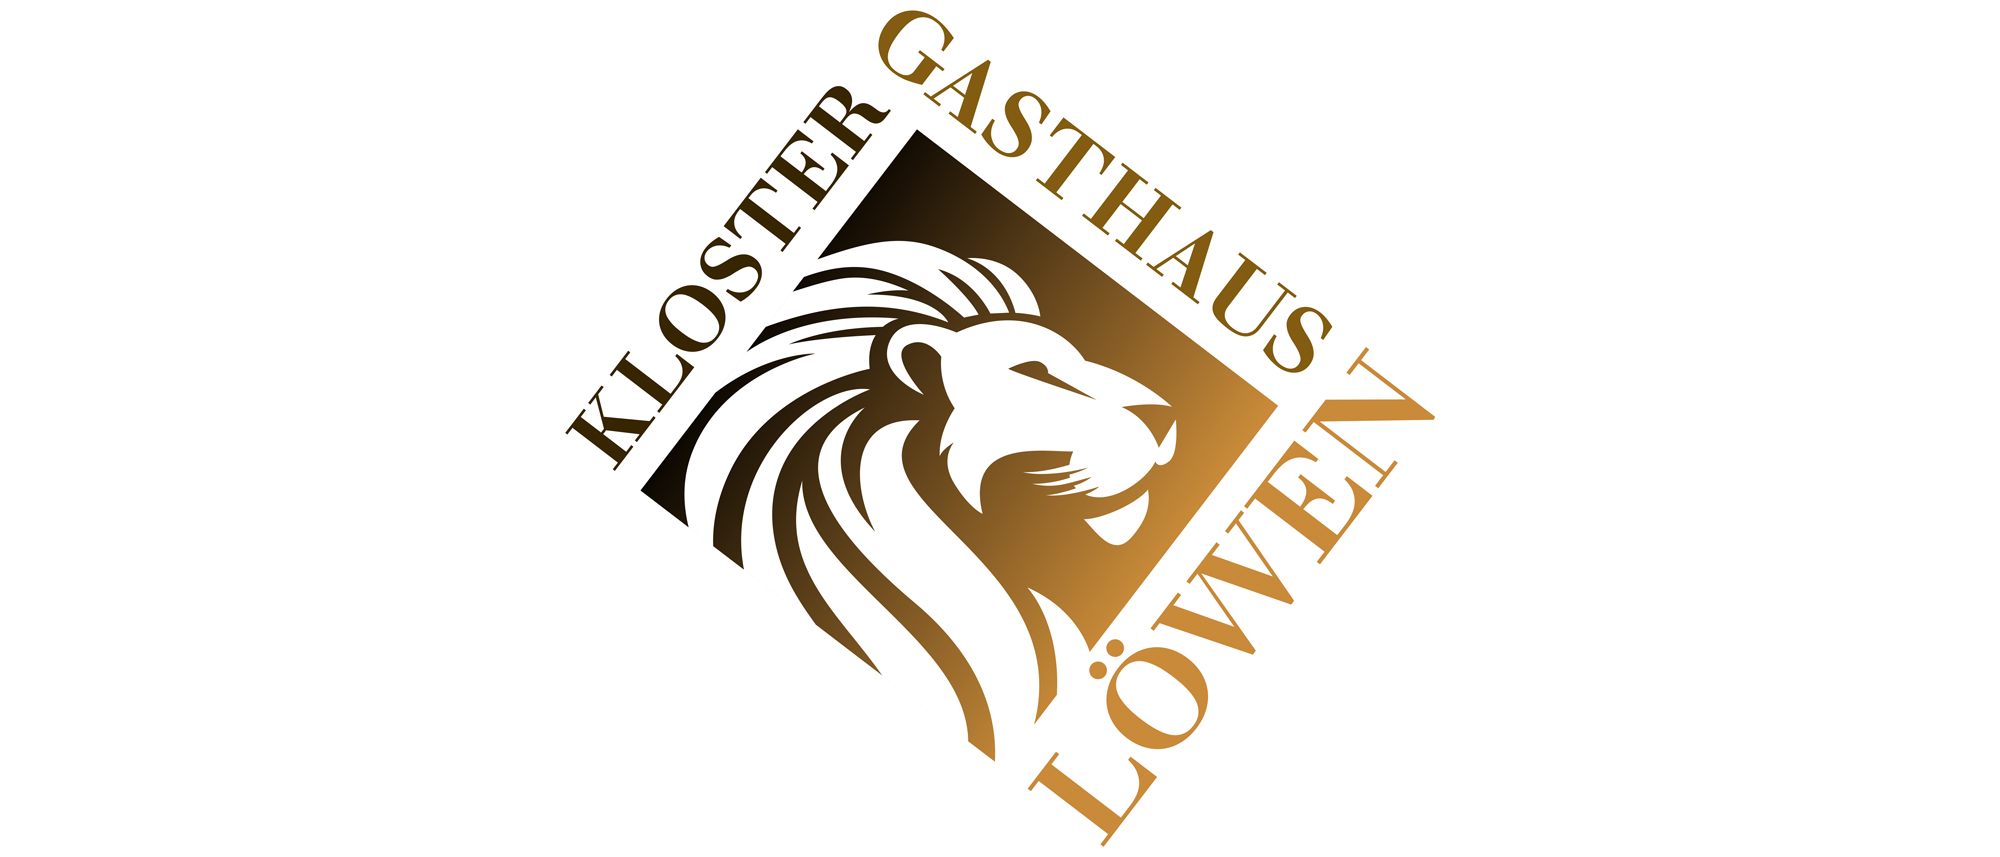 Klostergasthaus-Loewen_Logo_21-9_web.jpg